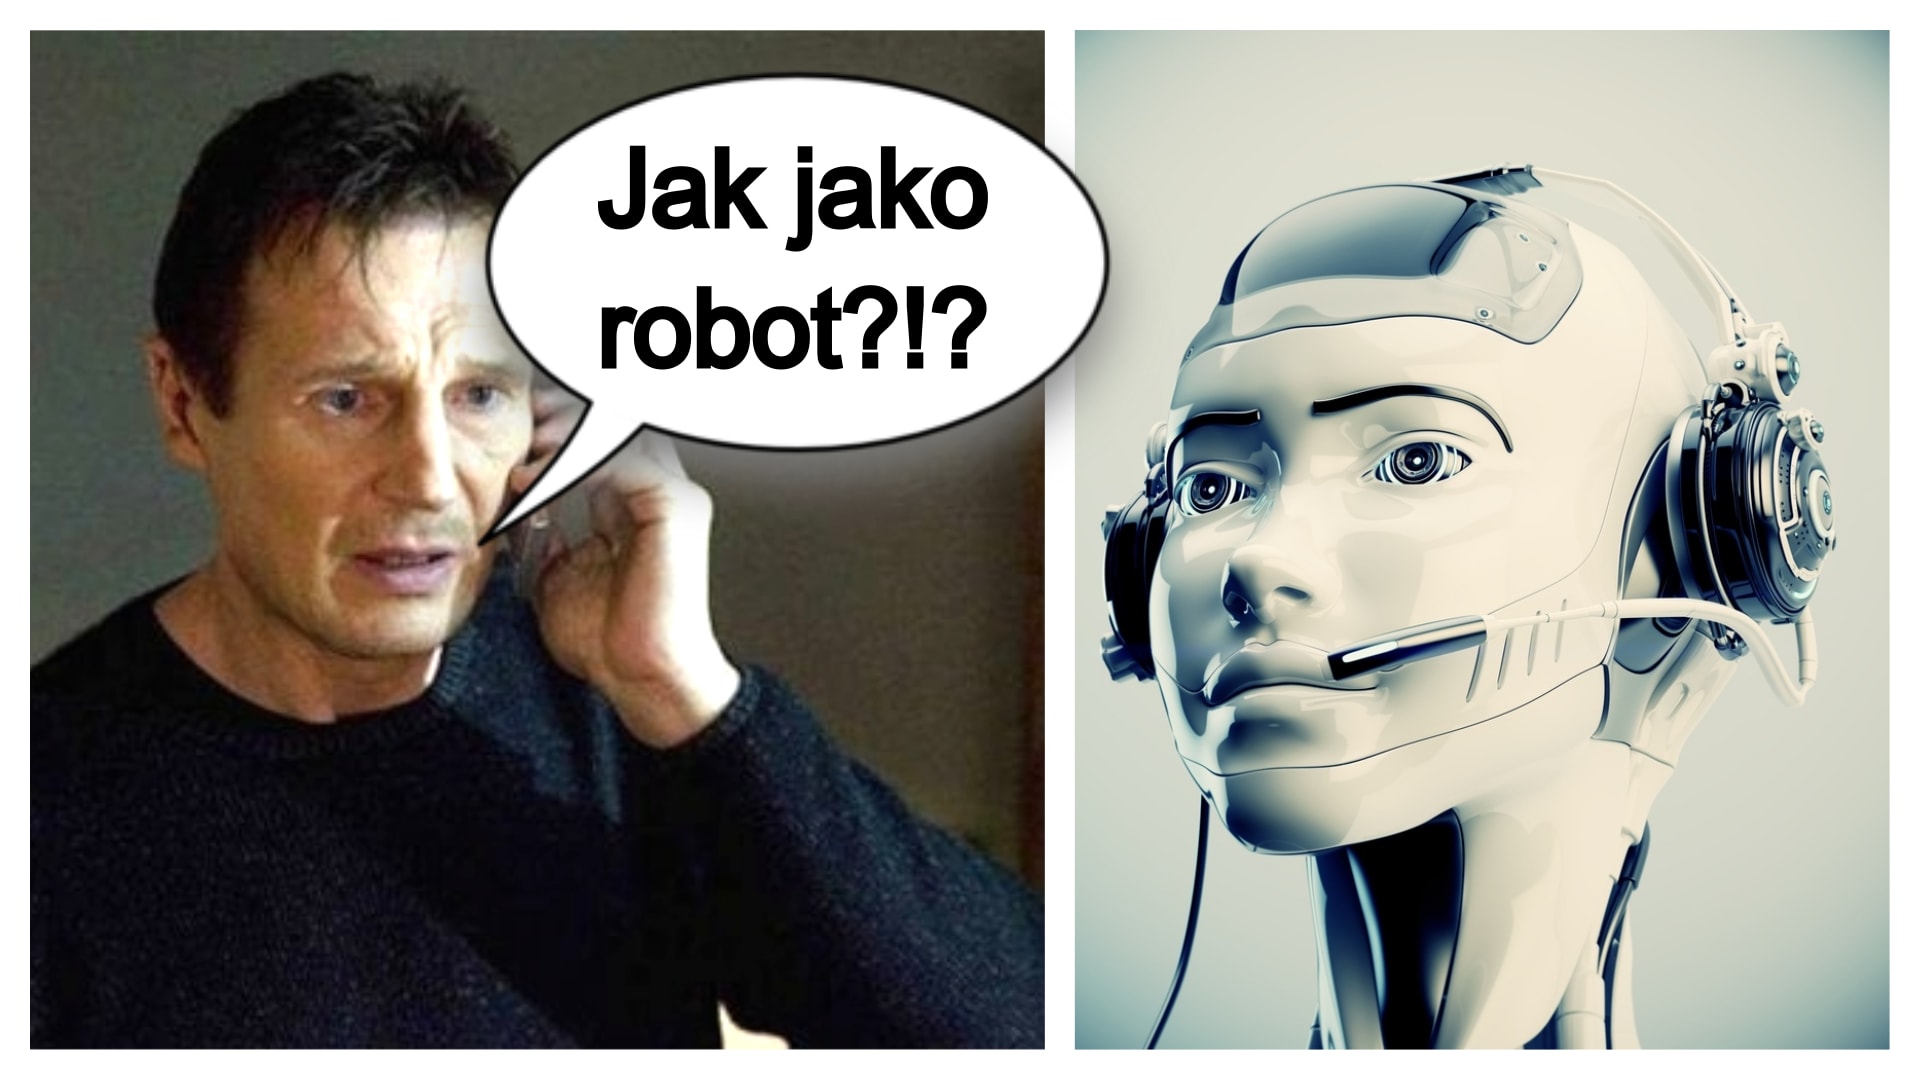 Blíží se doba, kdy nepoznáme po telefonu, že mluvíme s robotem